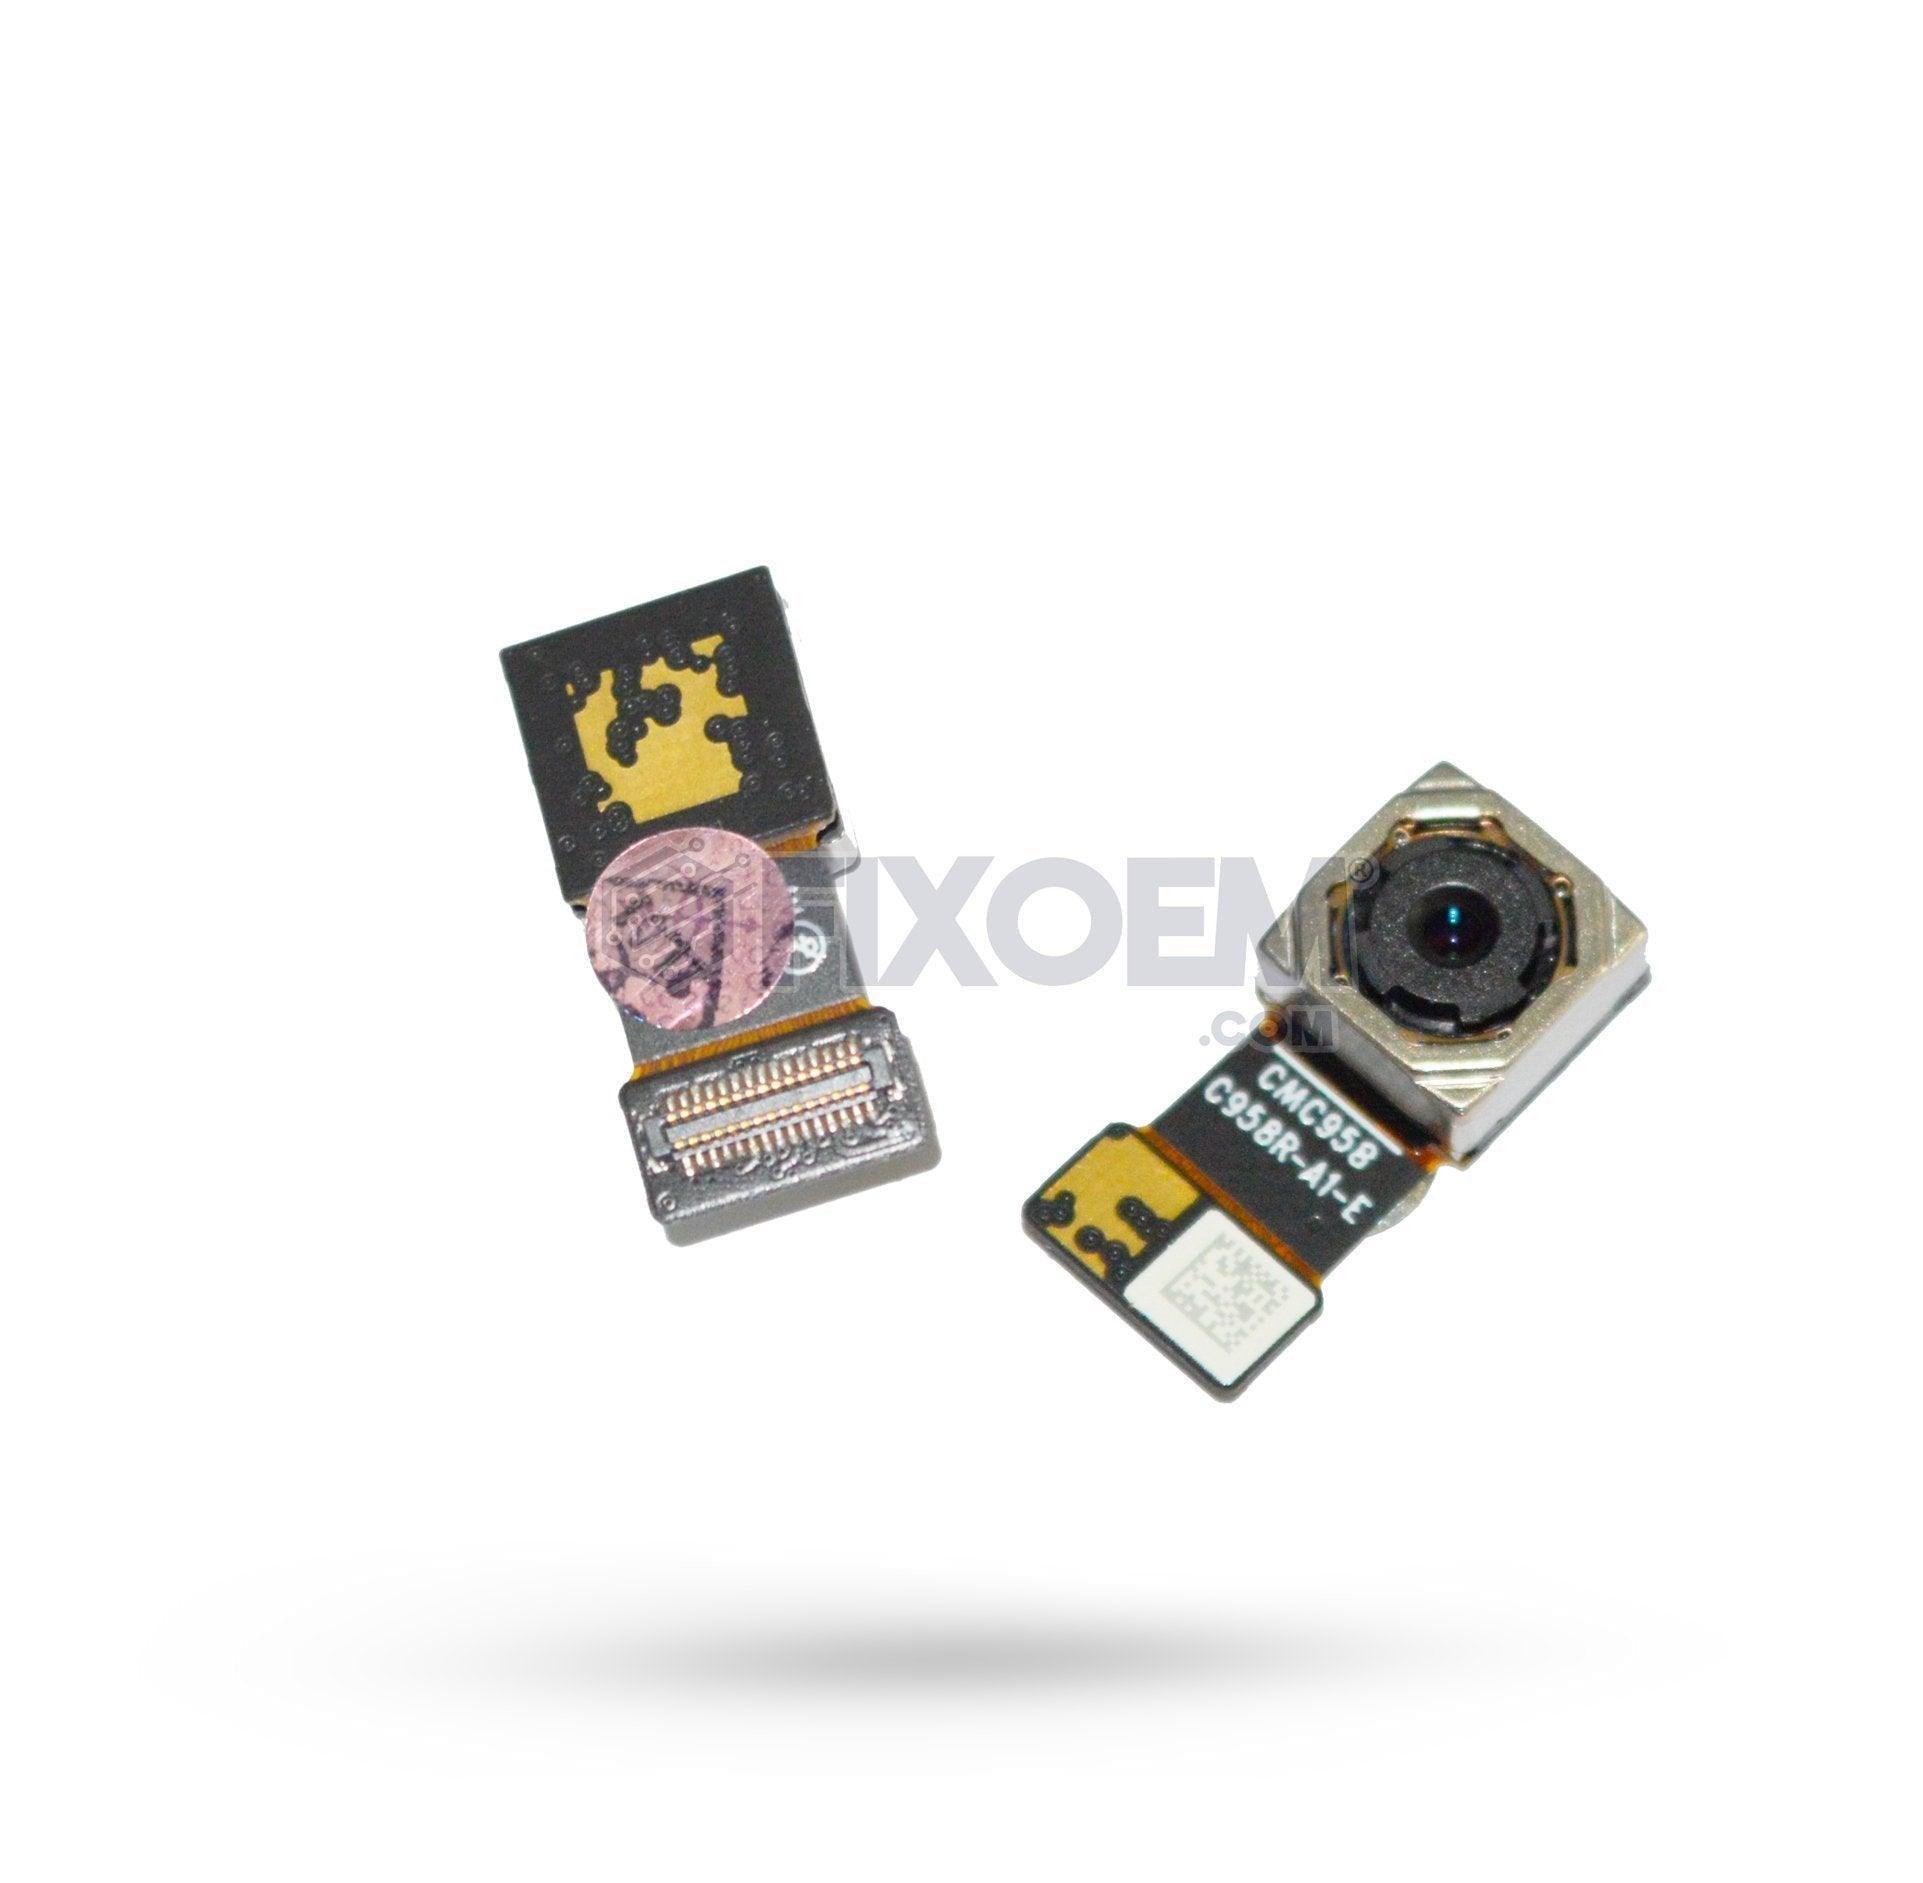 Camara Trasera Moto E5 / G6 Play Cmc958 Xt1952 Xt1922 a solo $ 230.00 Refaccion y puestos celulares, refurbish y microelectronica.- FixOEM